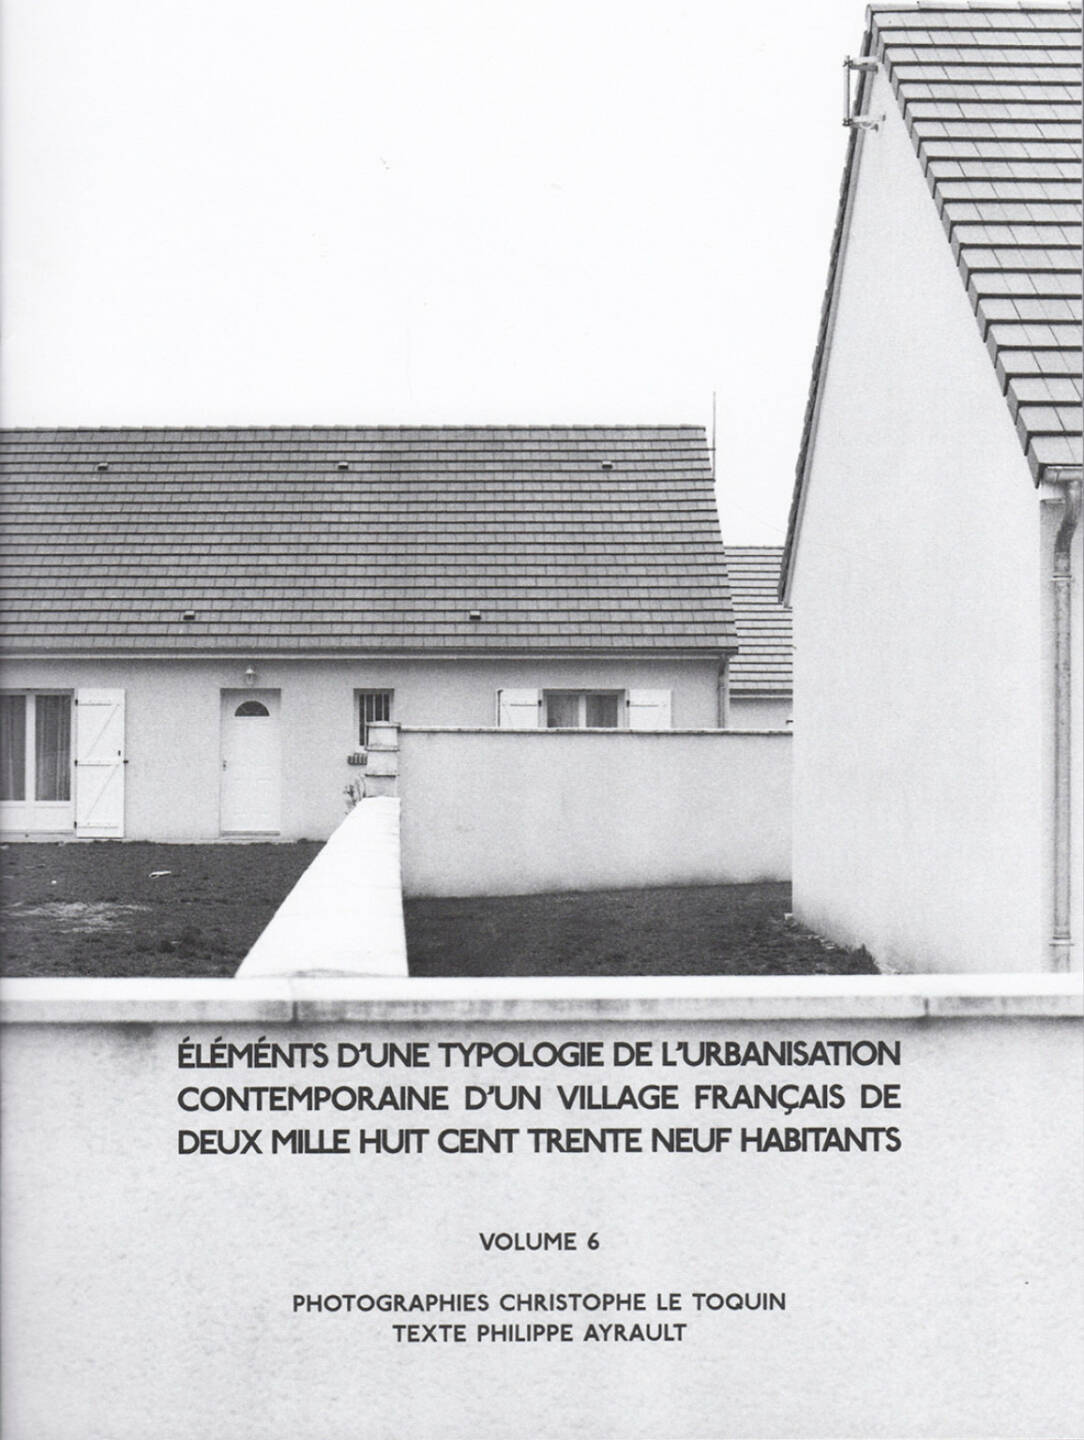 Christophe Le Toquin - Éléments Vol #6, Self published 2015, Cover - http://josefchladek.com/book/christophe_le_toquin_-_elements_dune_typologie_de_lurbanisation_contemporaine_dun_village_francais_de_deux_mille_huit_cent_trente_neuf_habitants_-_vol_6